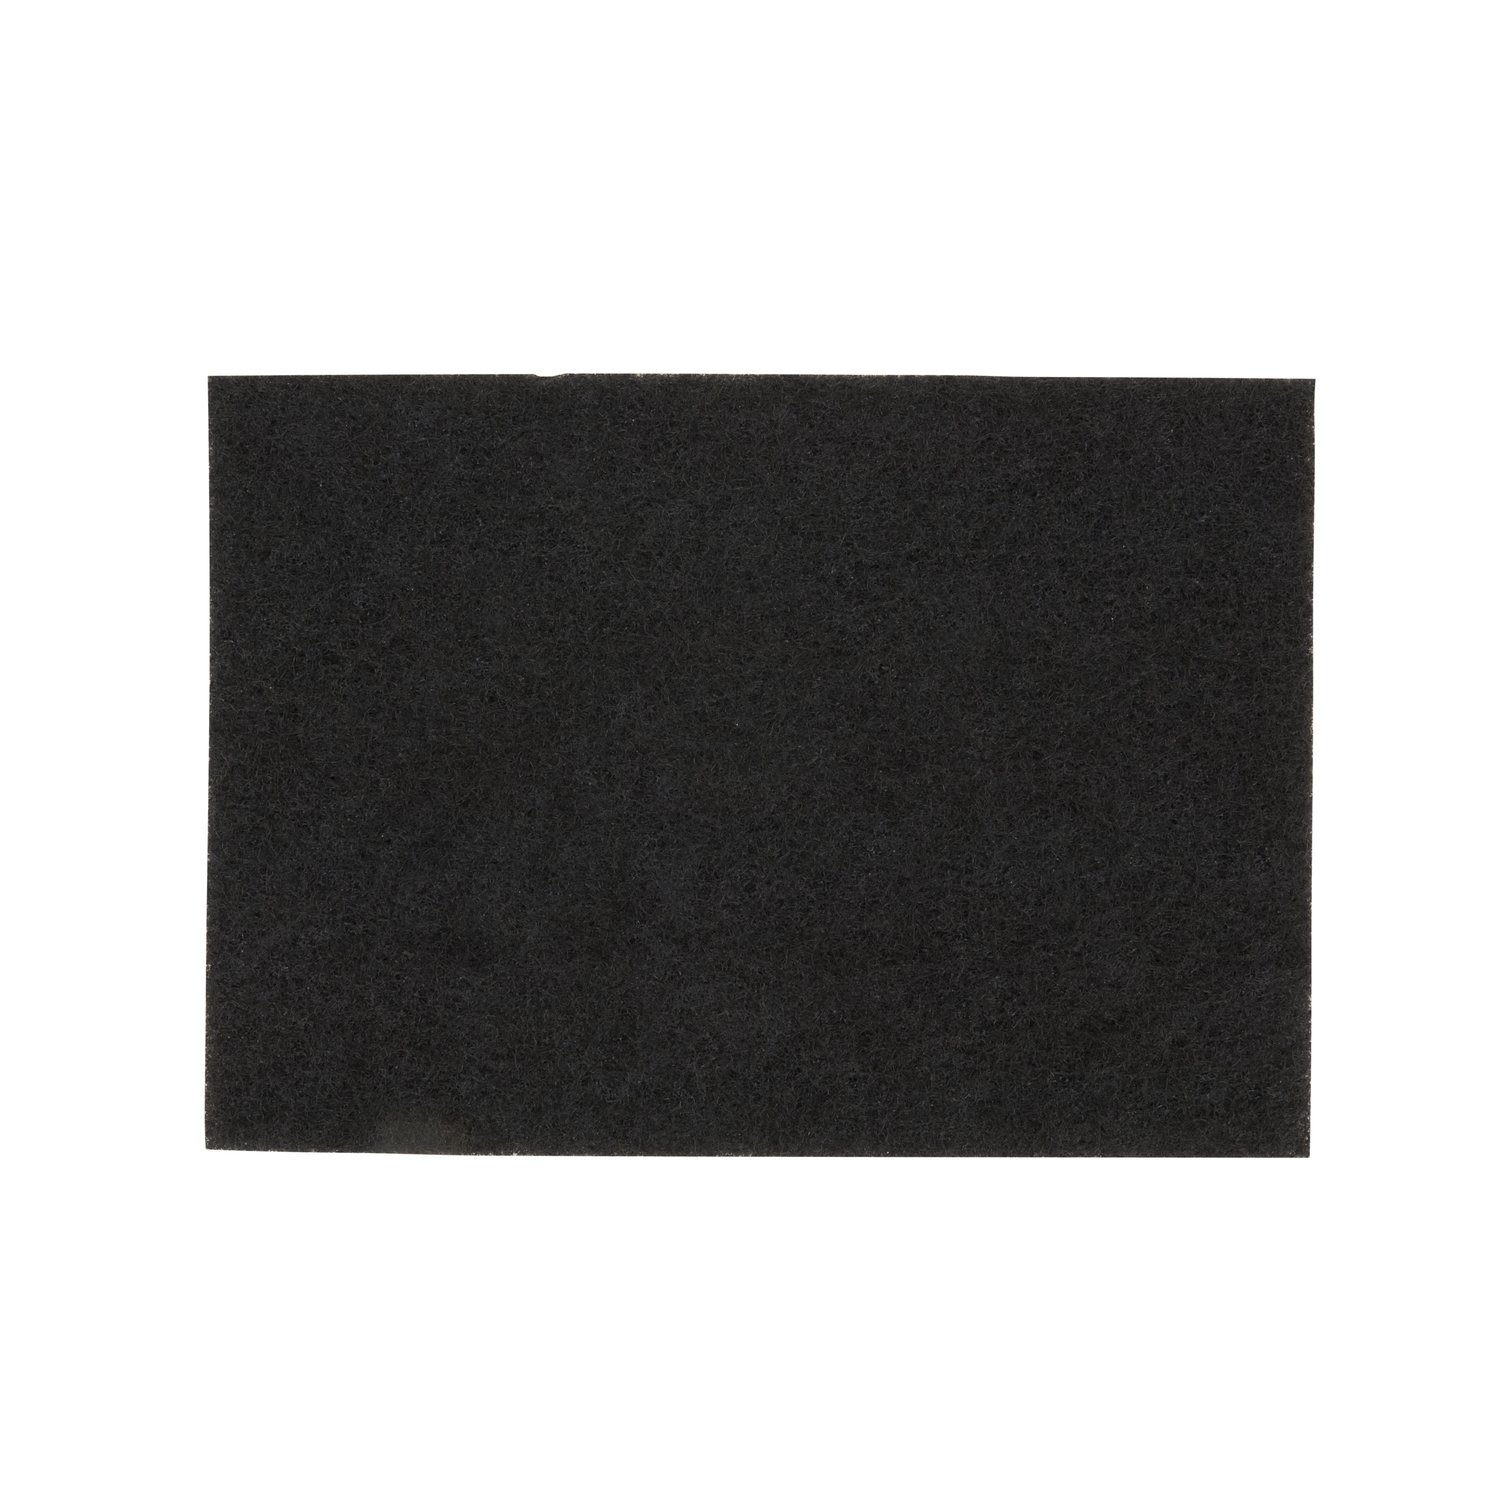 7000126839 - 3M Black Stripper Pad 7200, 28 in x 14 in, 10/Case